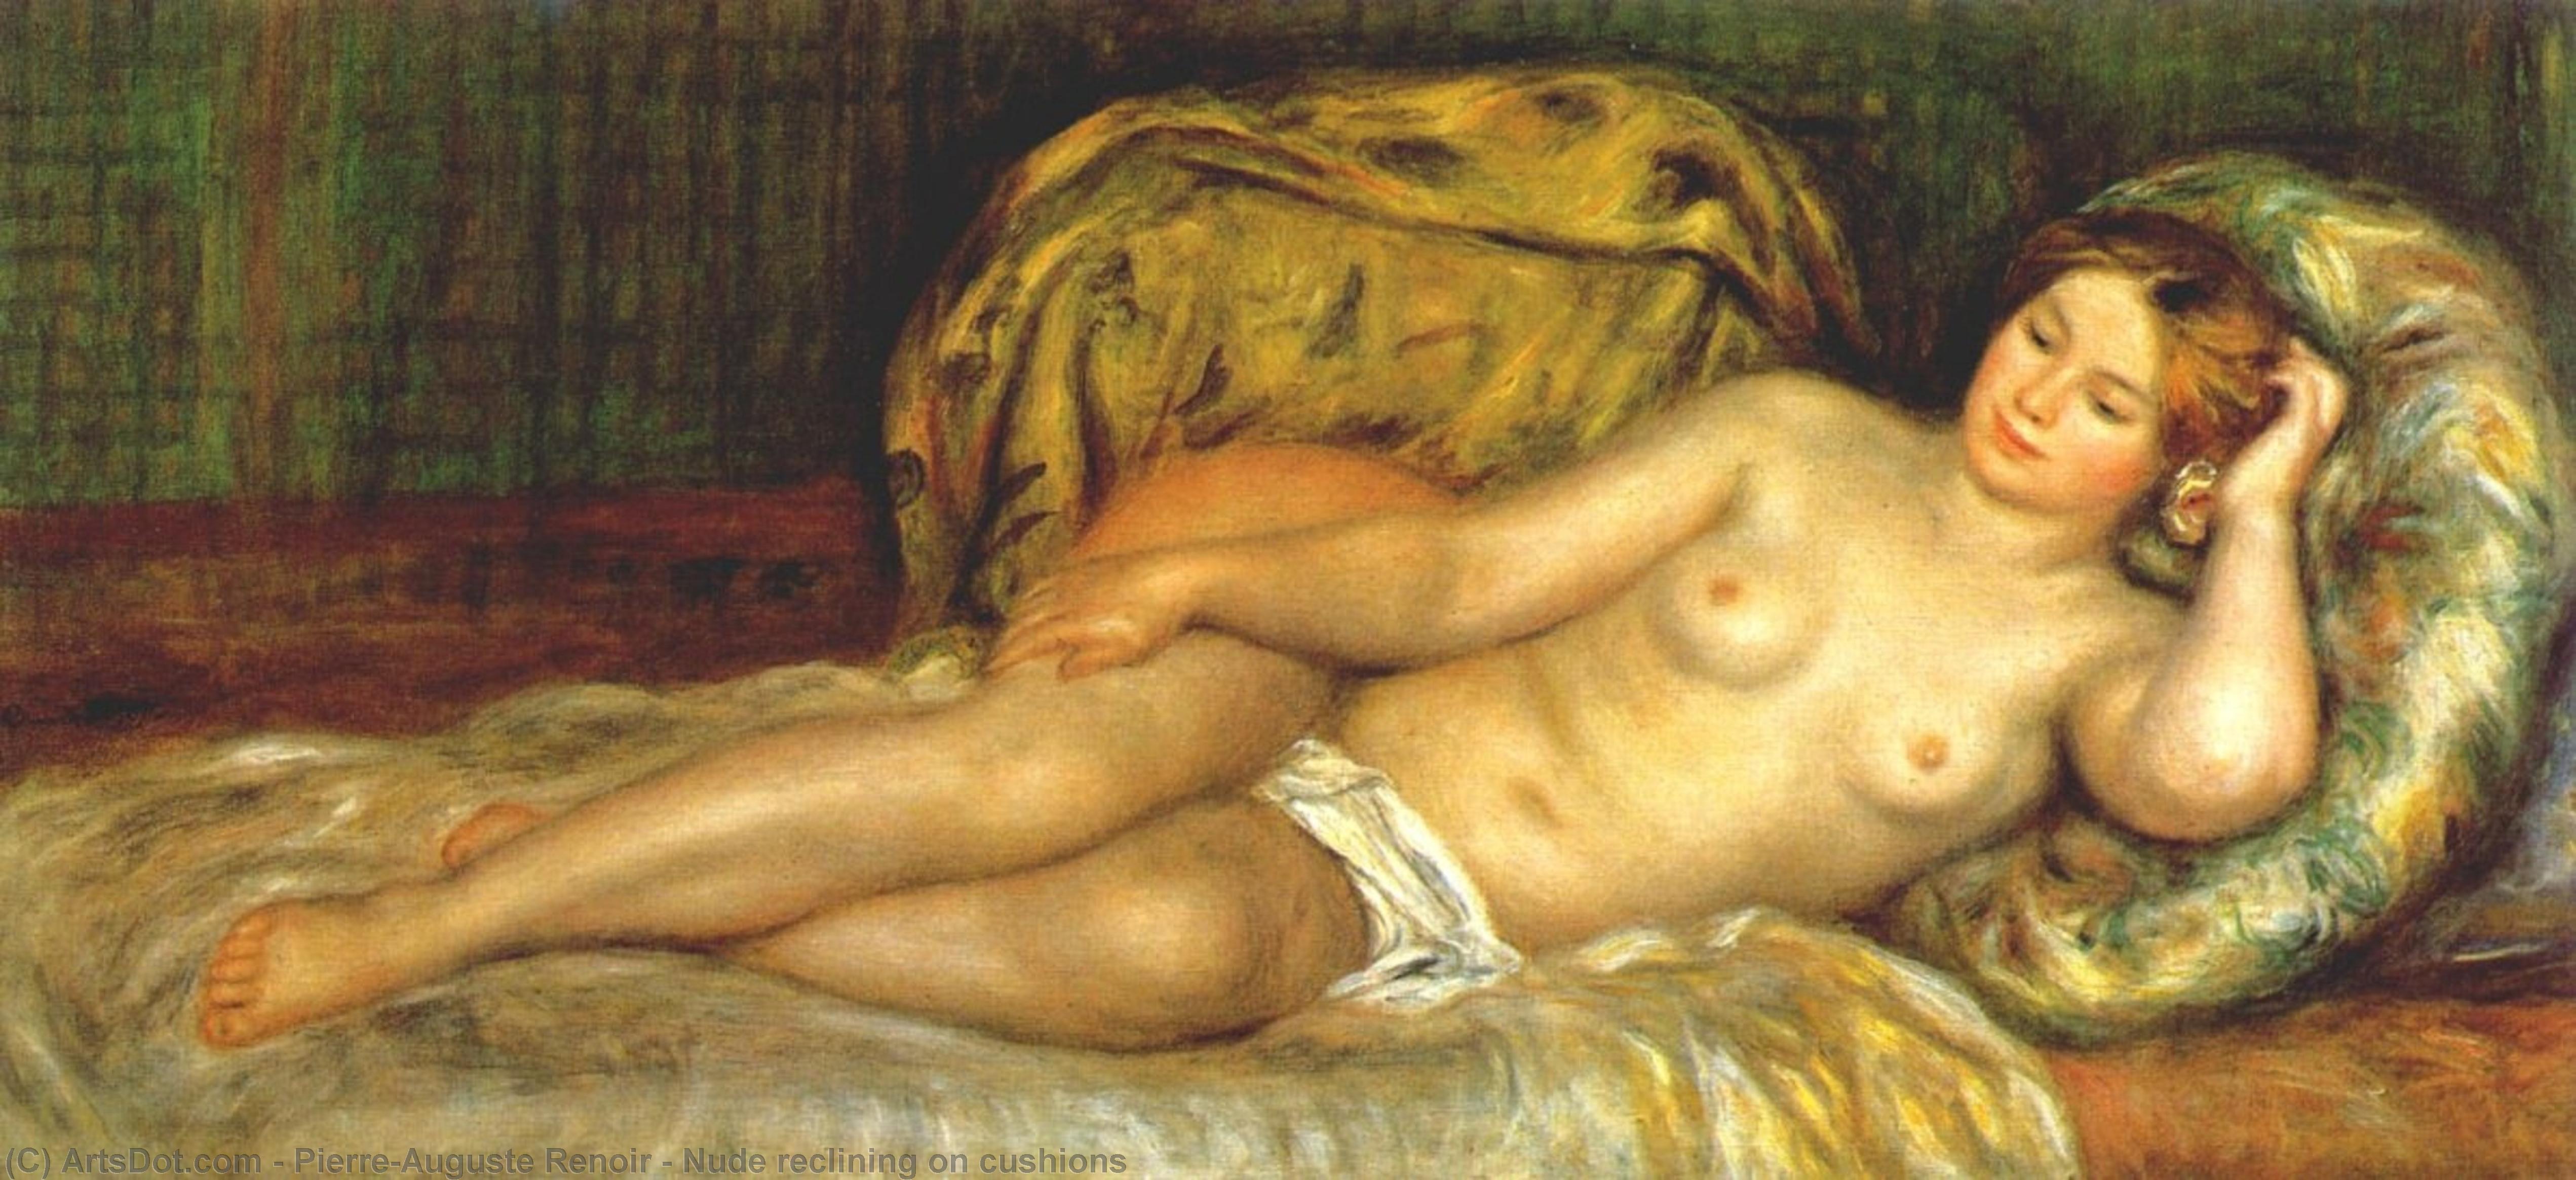 WikiOO.org - Энциклопедия изобразительного искусства - Живопись, Картины  Pierre-Auguste Renoir - Обнаженная лежащая в  подушки